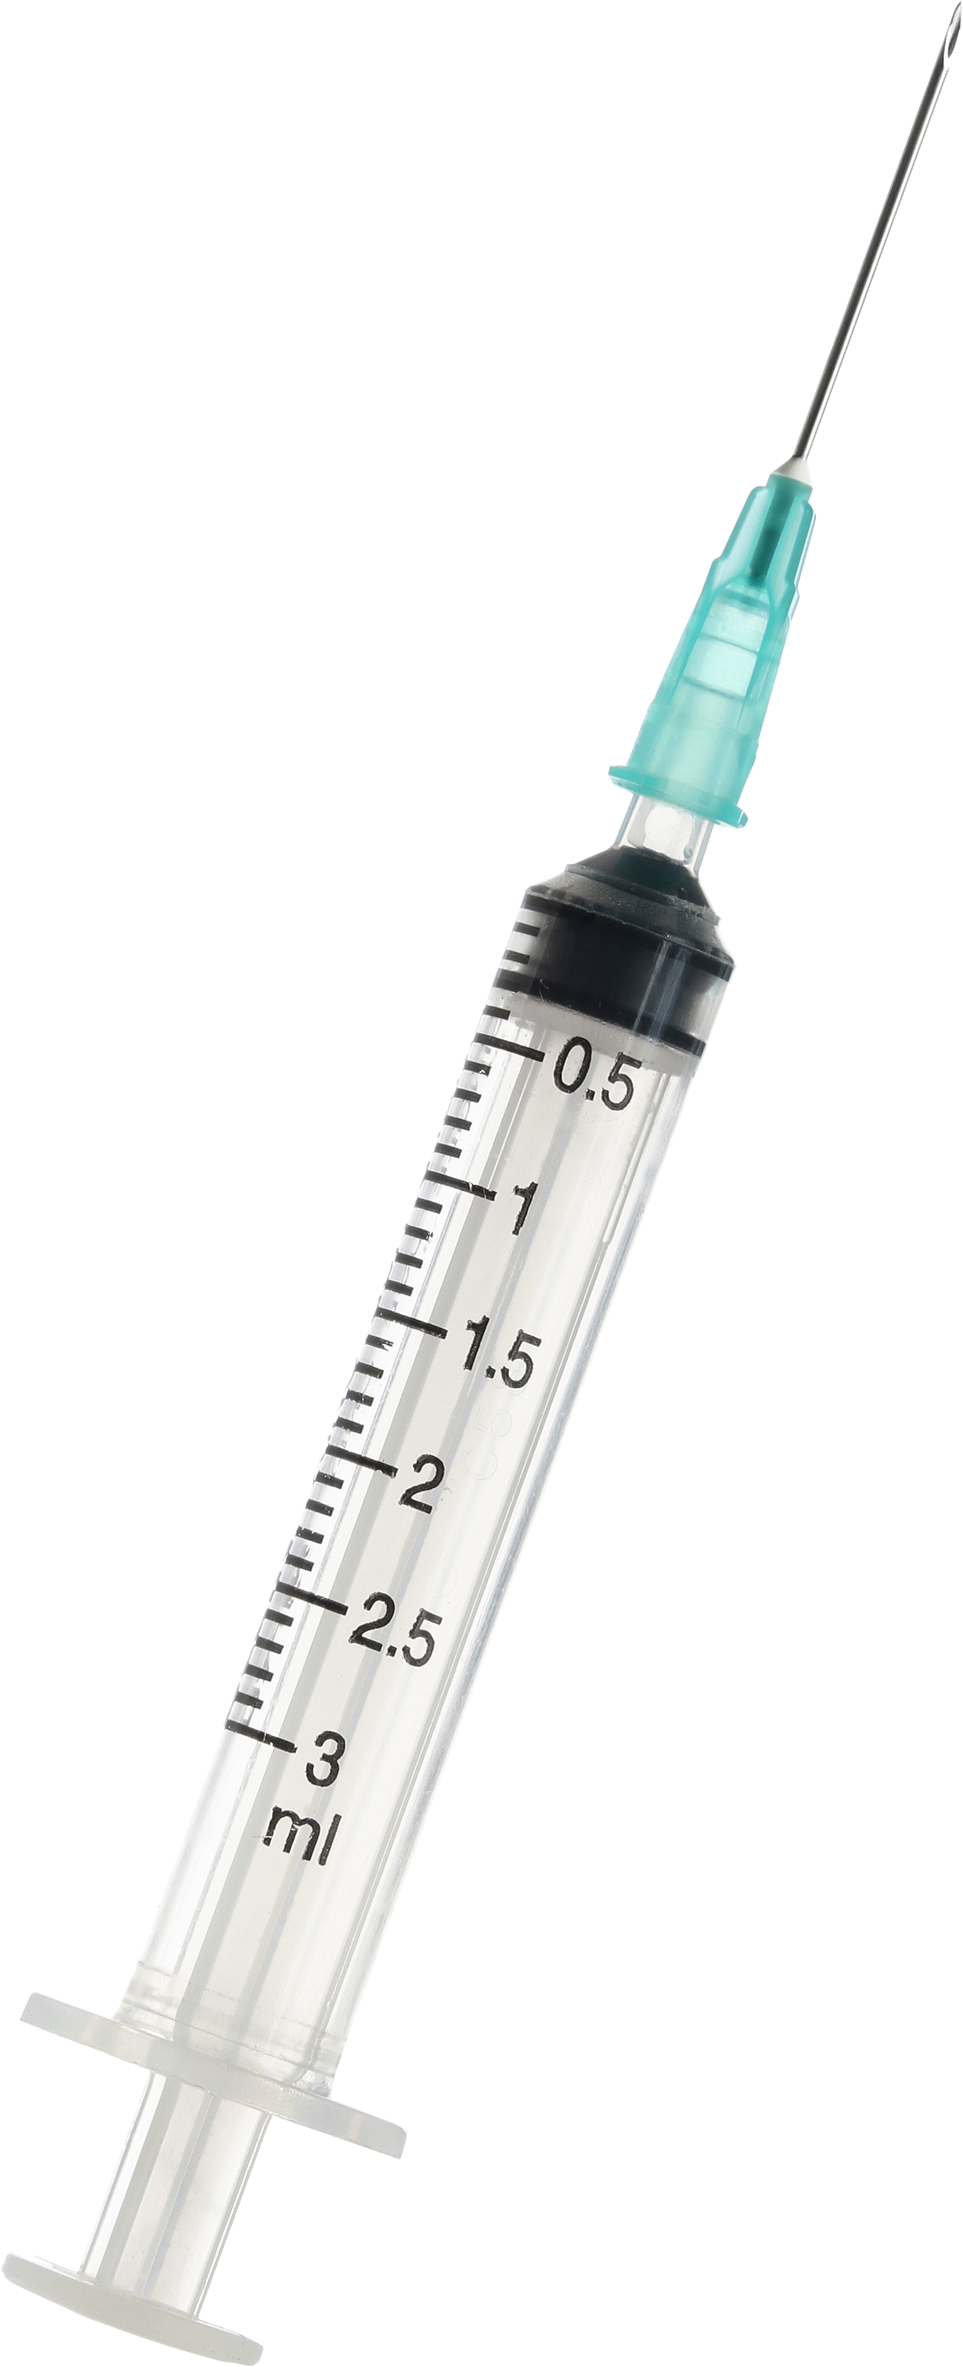 Syringe PNG Clipart Background